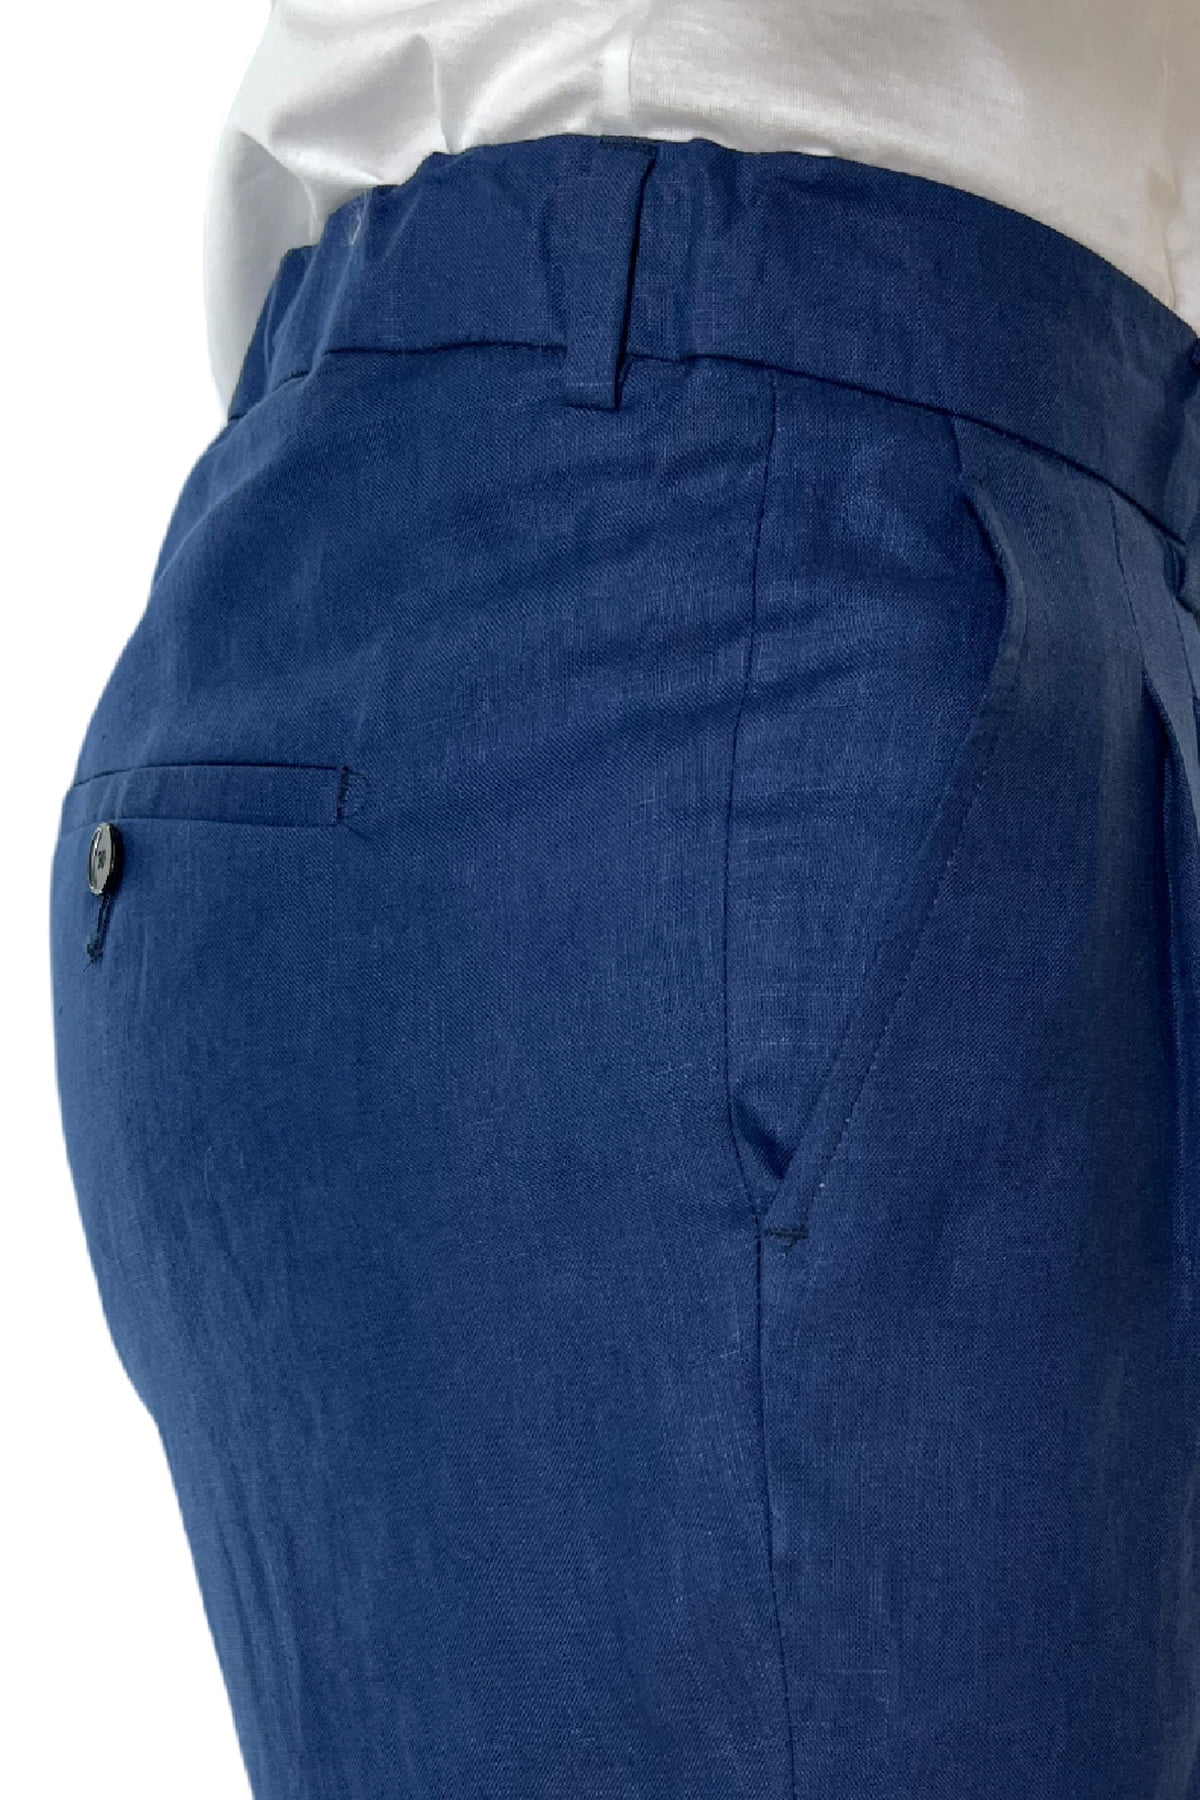 Pantalaccio uomo blu in lino 100% tasca america con doppia pence e laccio in vita risvolto 4cm